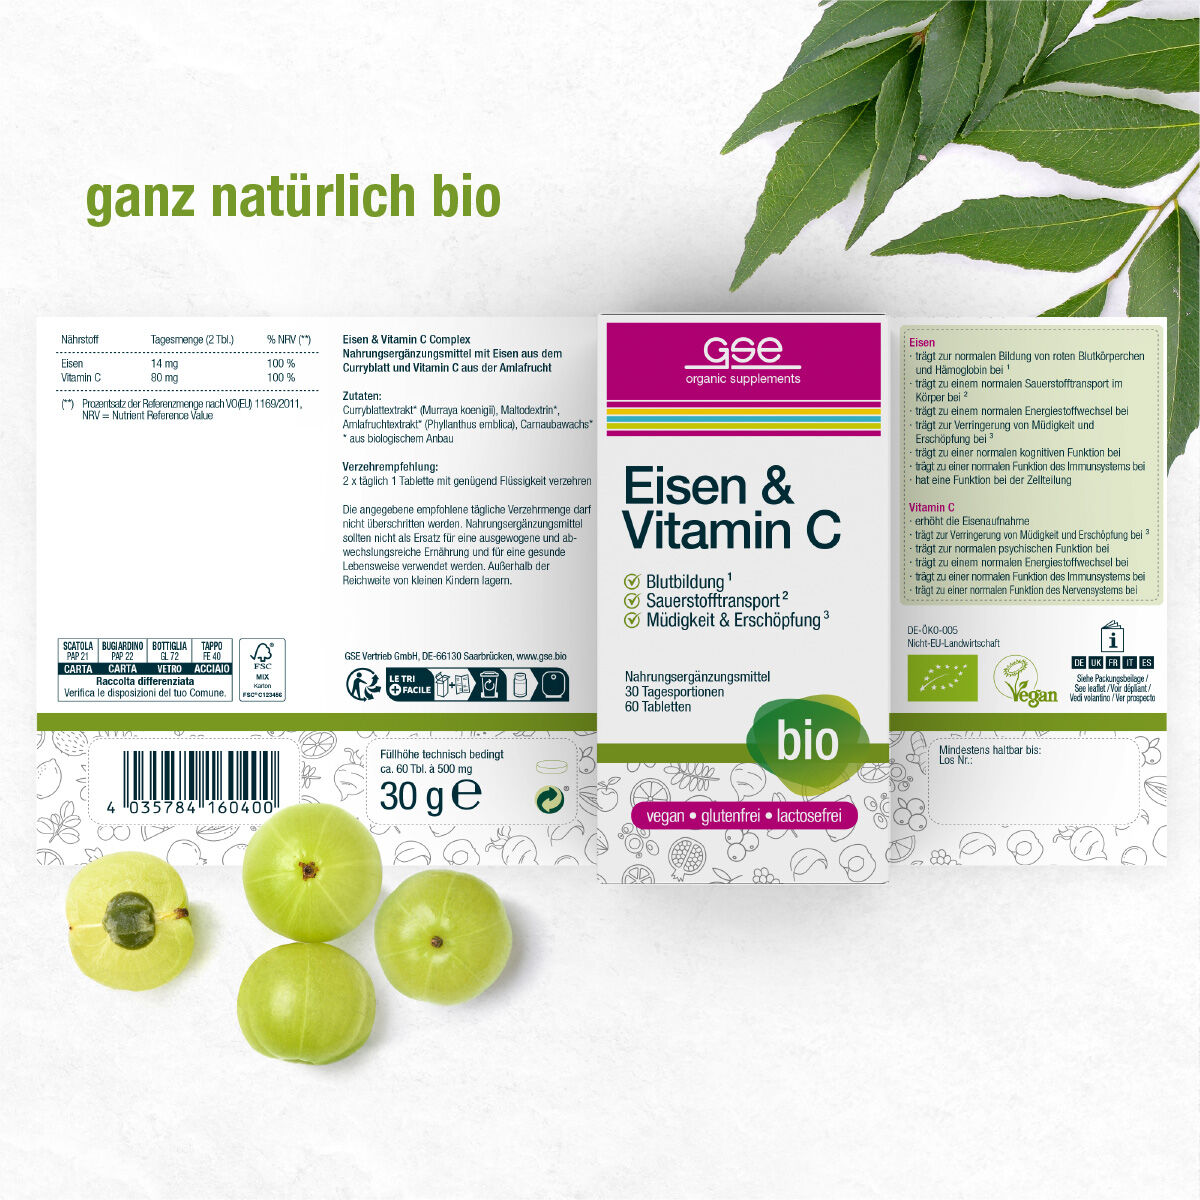 Eisen & Vitamin C Complex (Bio)